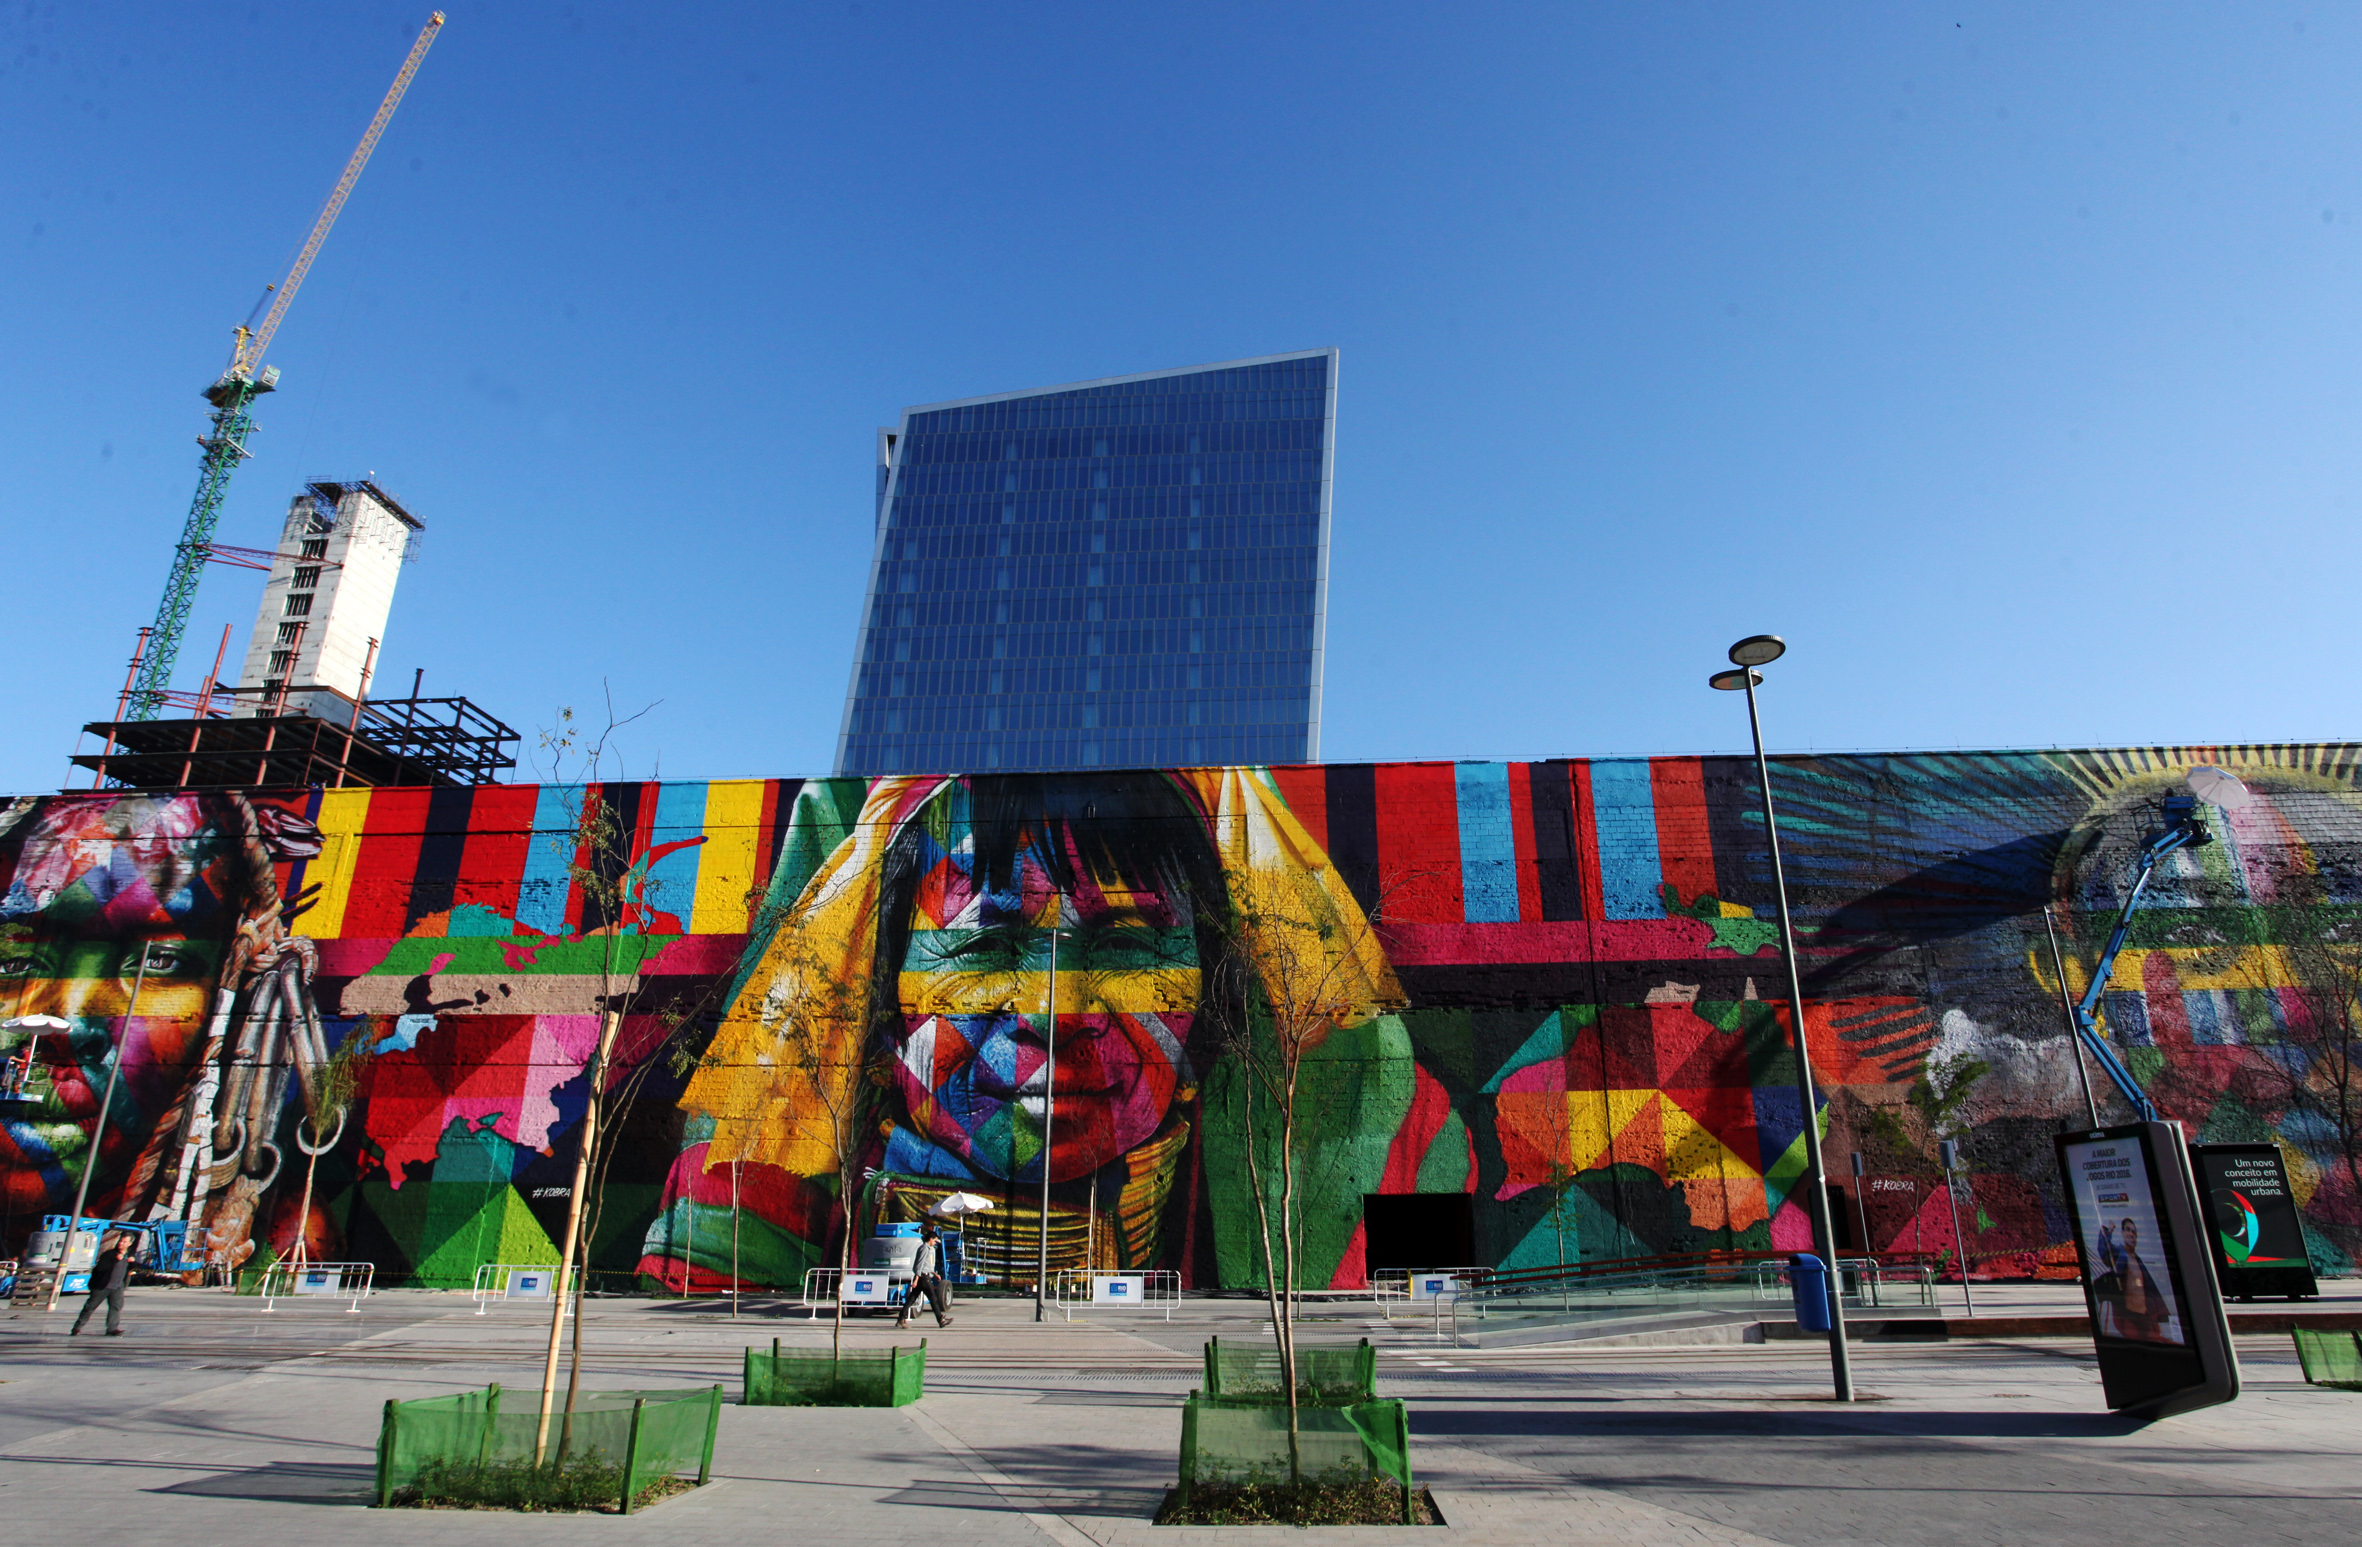 mural eduardo kobra rio de janeiro las etnias olimpiadas 2016 maior graffiti do mundo (2)